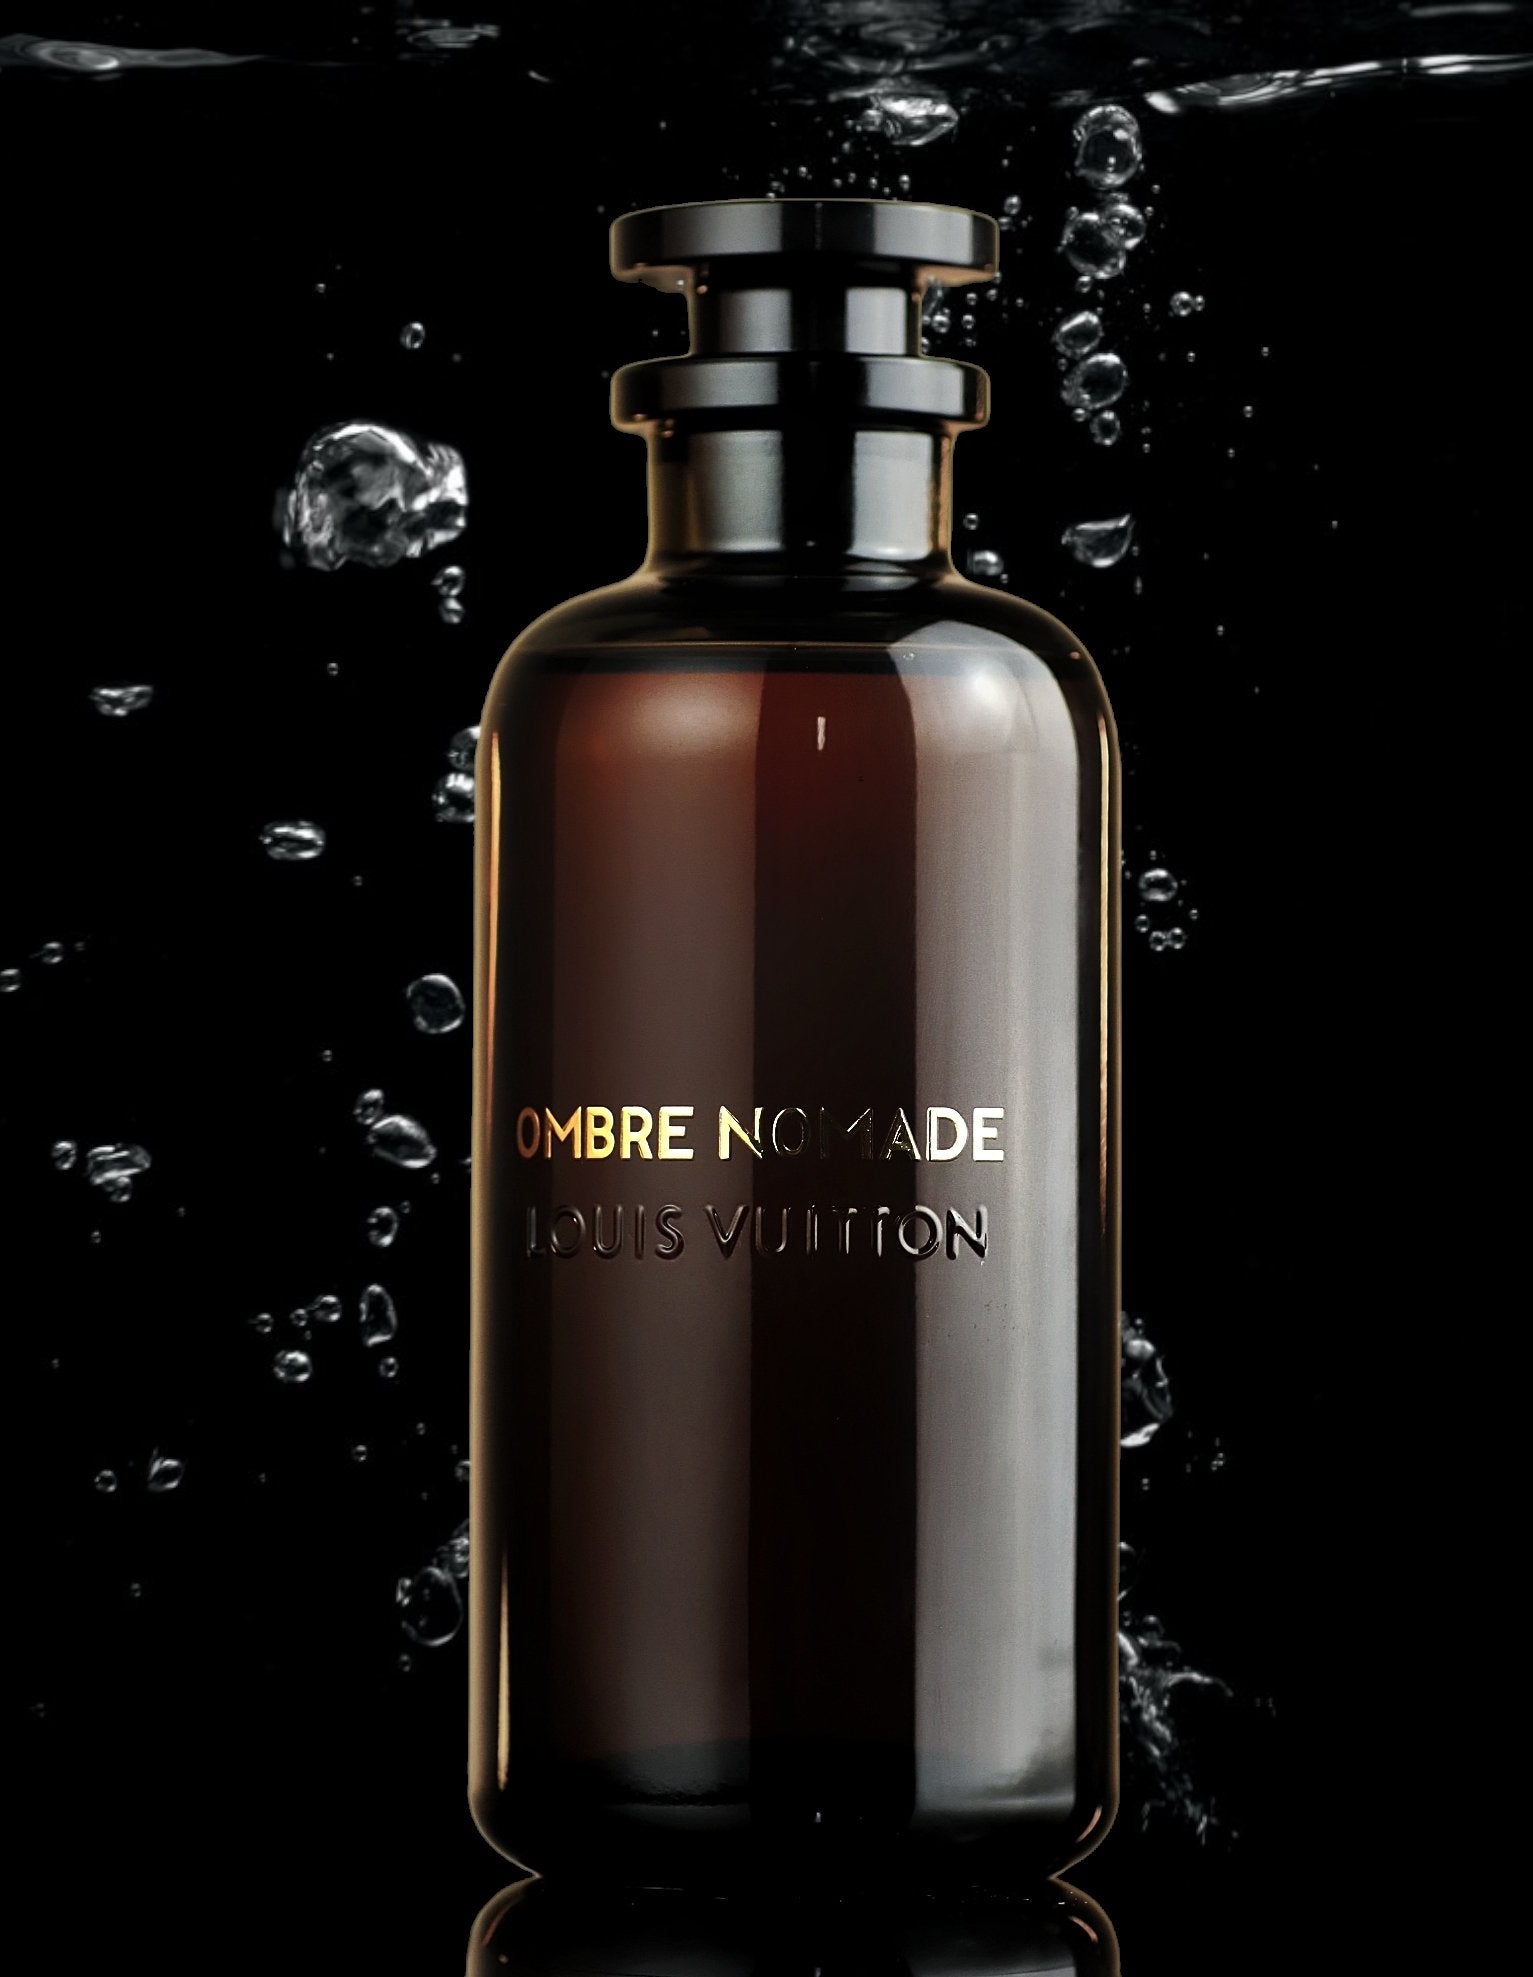 Louis Vuitton Ombre Nomade Perfume, Eau De Parfum 6.8 Oz/200 ml Spray